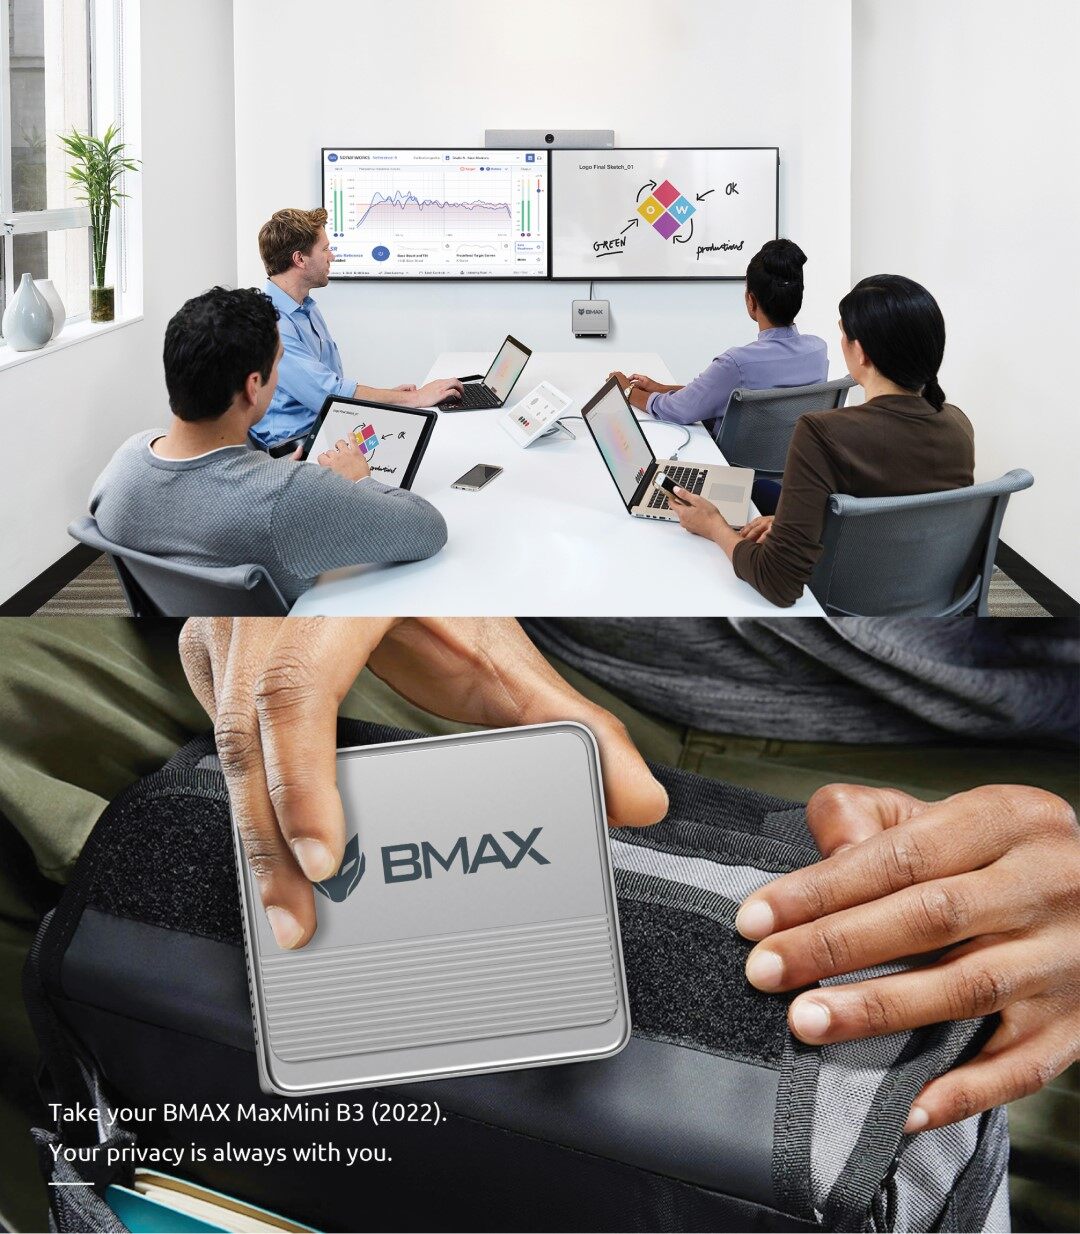 รูปภาพของ [ New! 2023 ]  BMAX B3 Mini PC Intel 11th Gen N5095 RAM 16GB + SSD 512GB Windows 11 พร้อมใช้งาน ประกัน 1 ปีในไทย